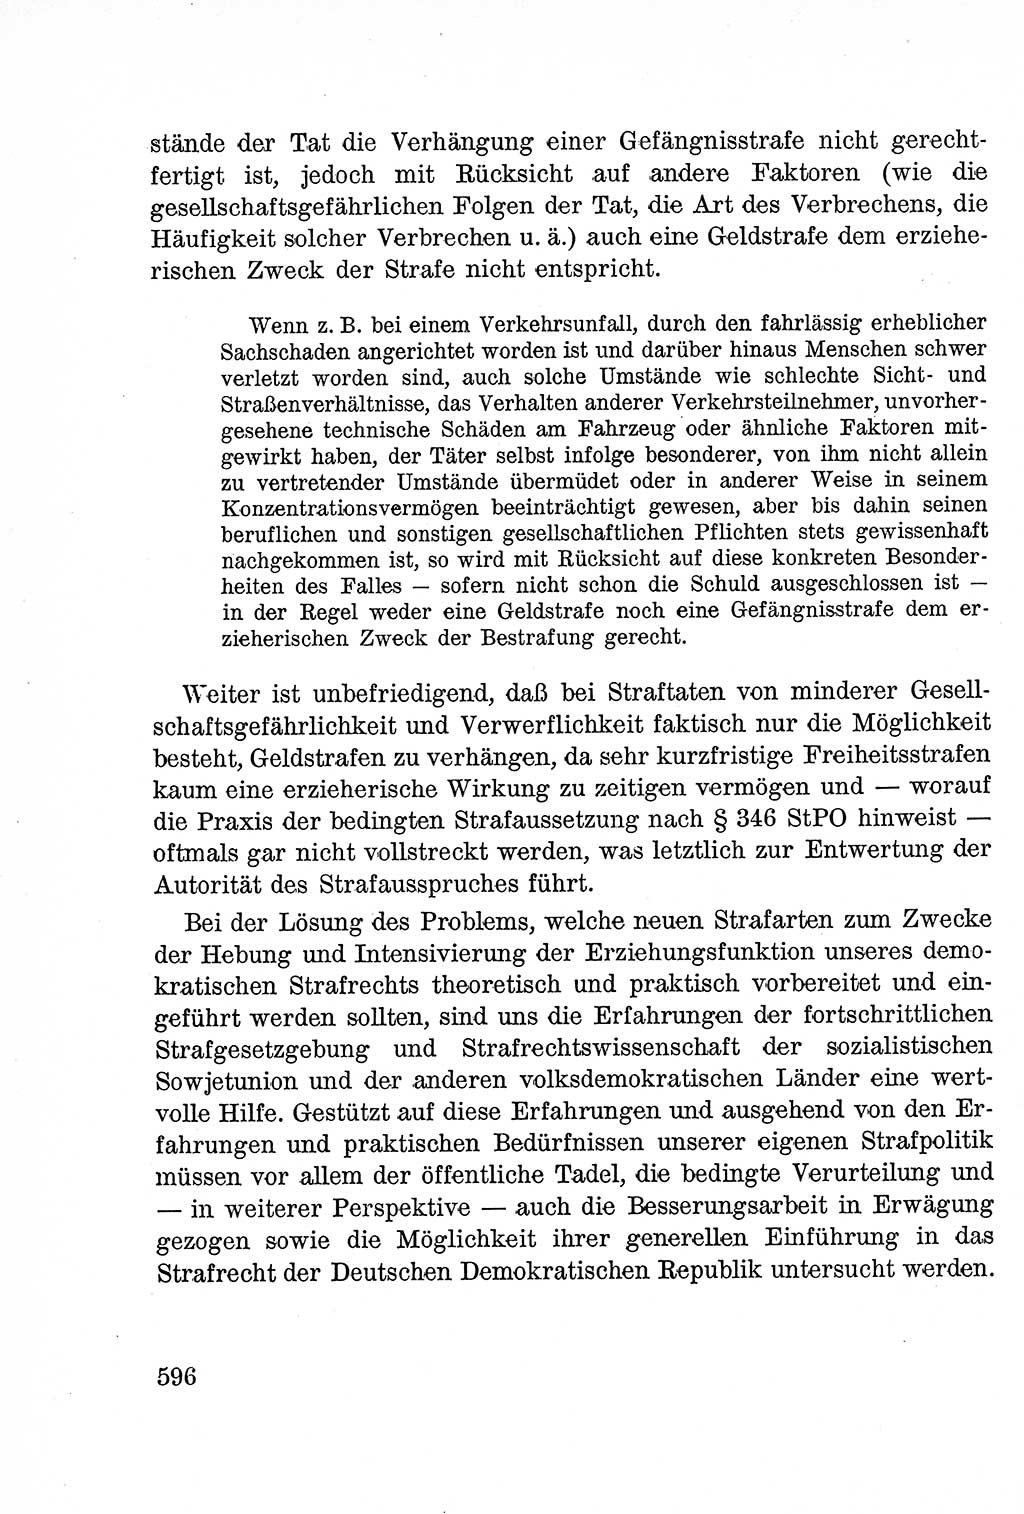 Lehrbuch des Strafrechts der Deutschen Demokratischen Republik (DDR), Allgemeiner Teil 1957, Seite 596 (Lb. Strafr. DDR AT 1957, S. 596)